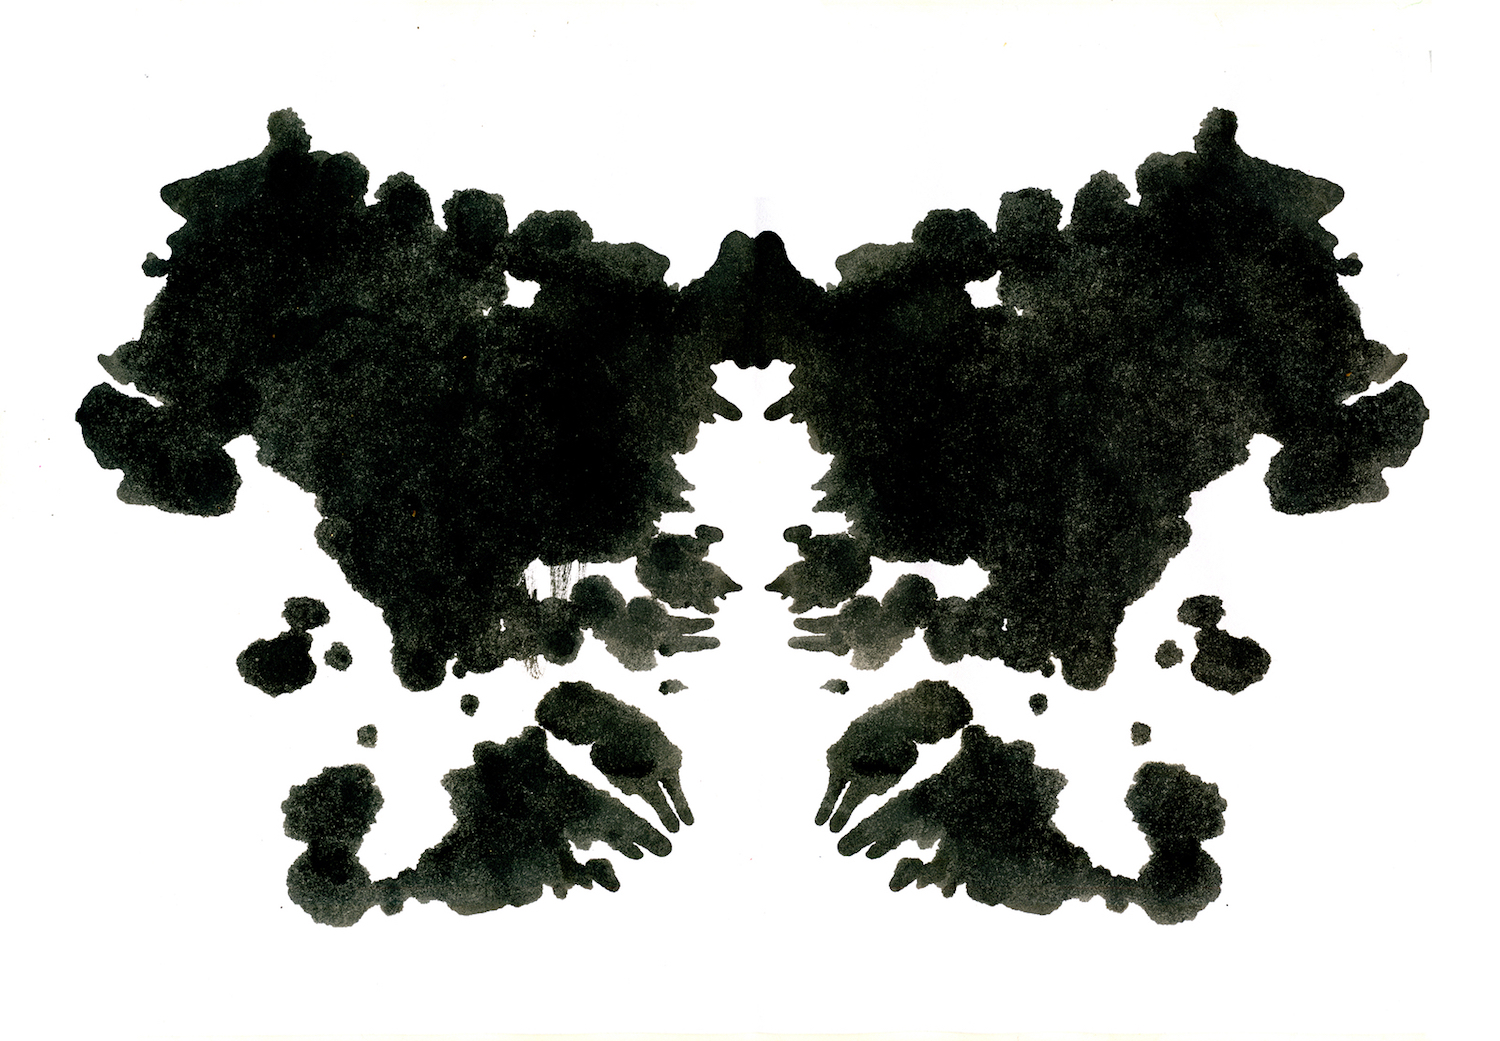 Rorschach inkblot test illustration